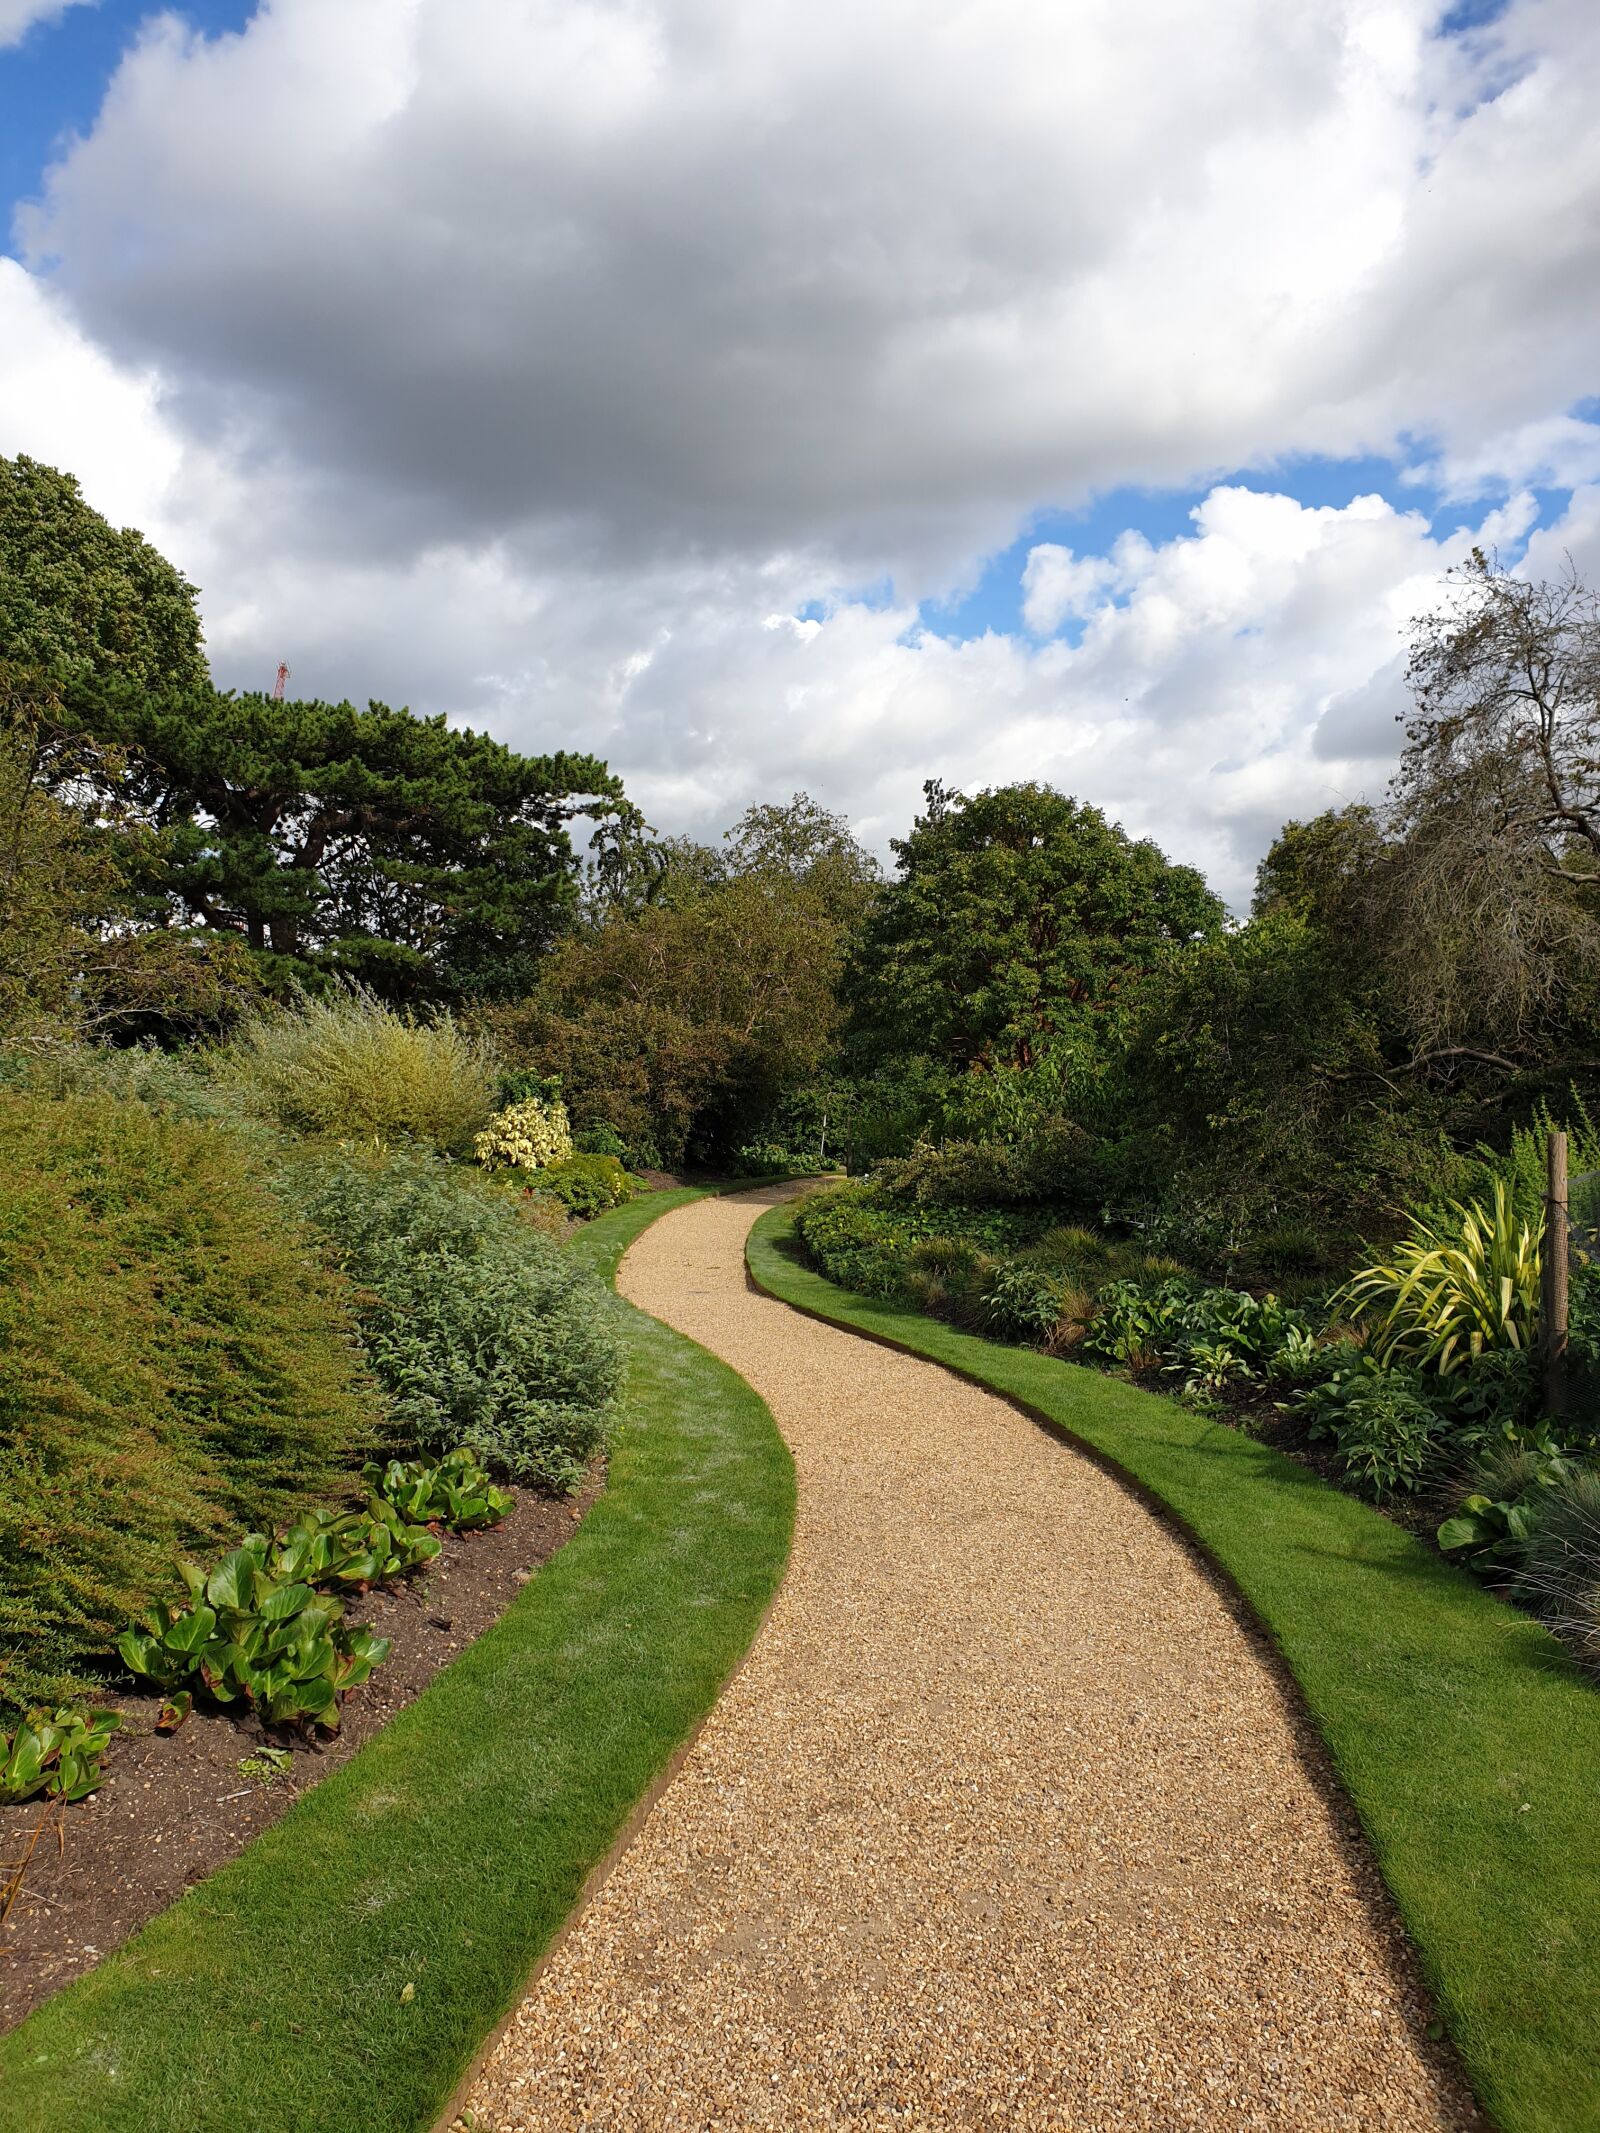 Samsung Galaxy Note9 sample photo. Cambridge, garden, plants photography